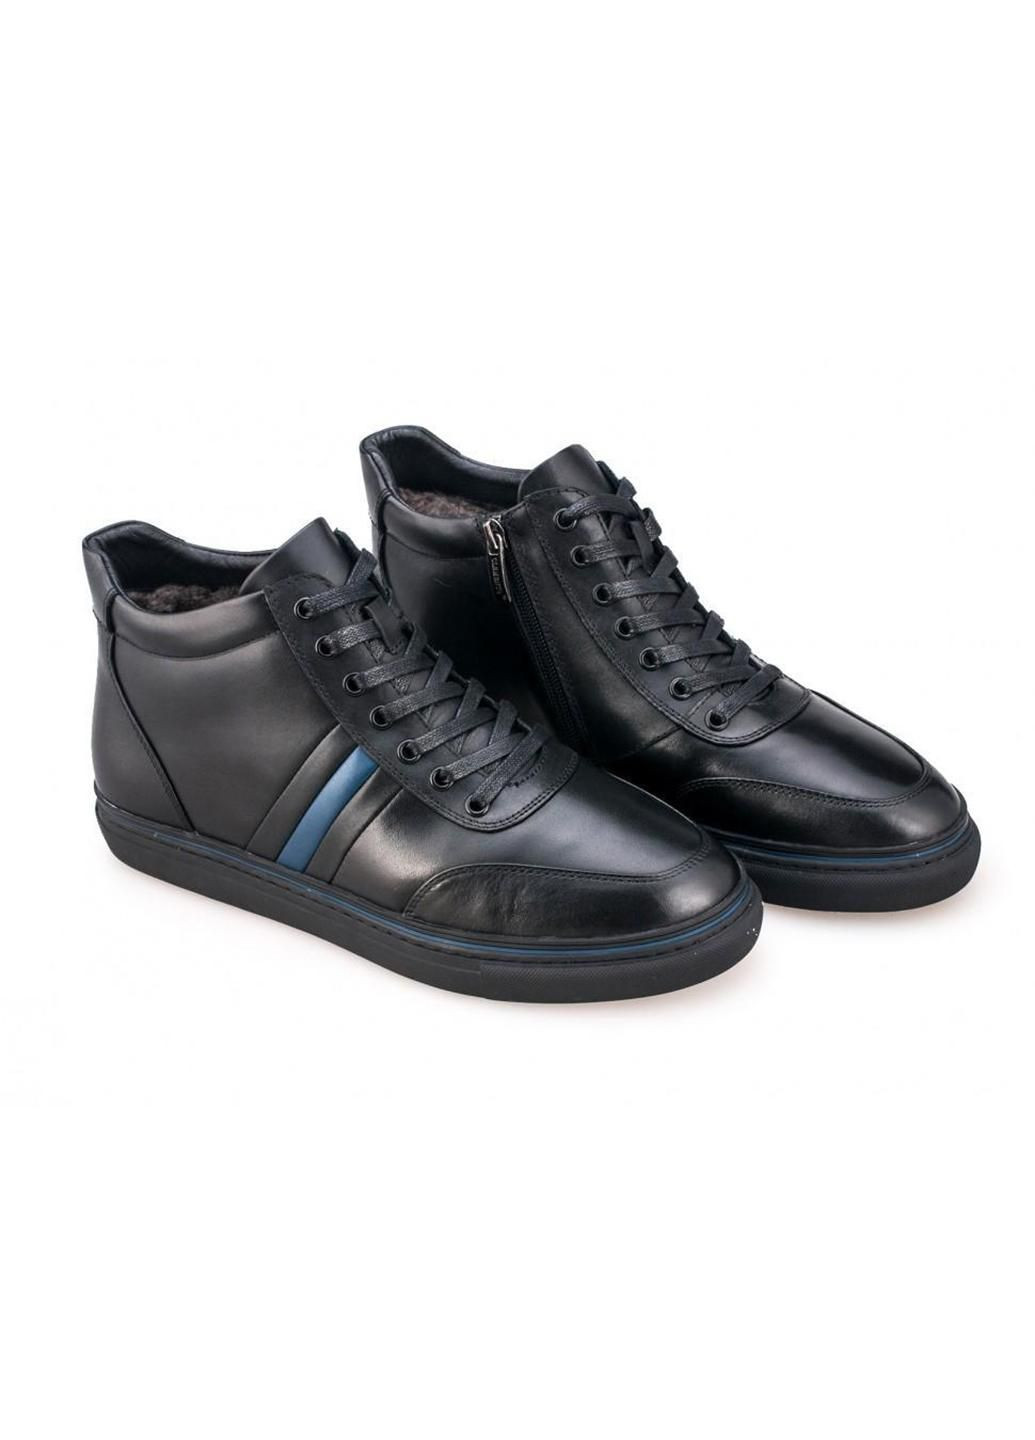 Черные зимние ботинки комфорт 7174321 цвет черный Clemento